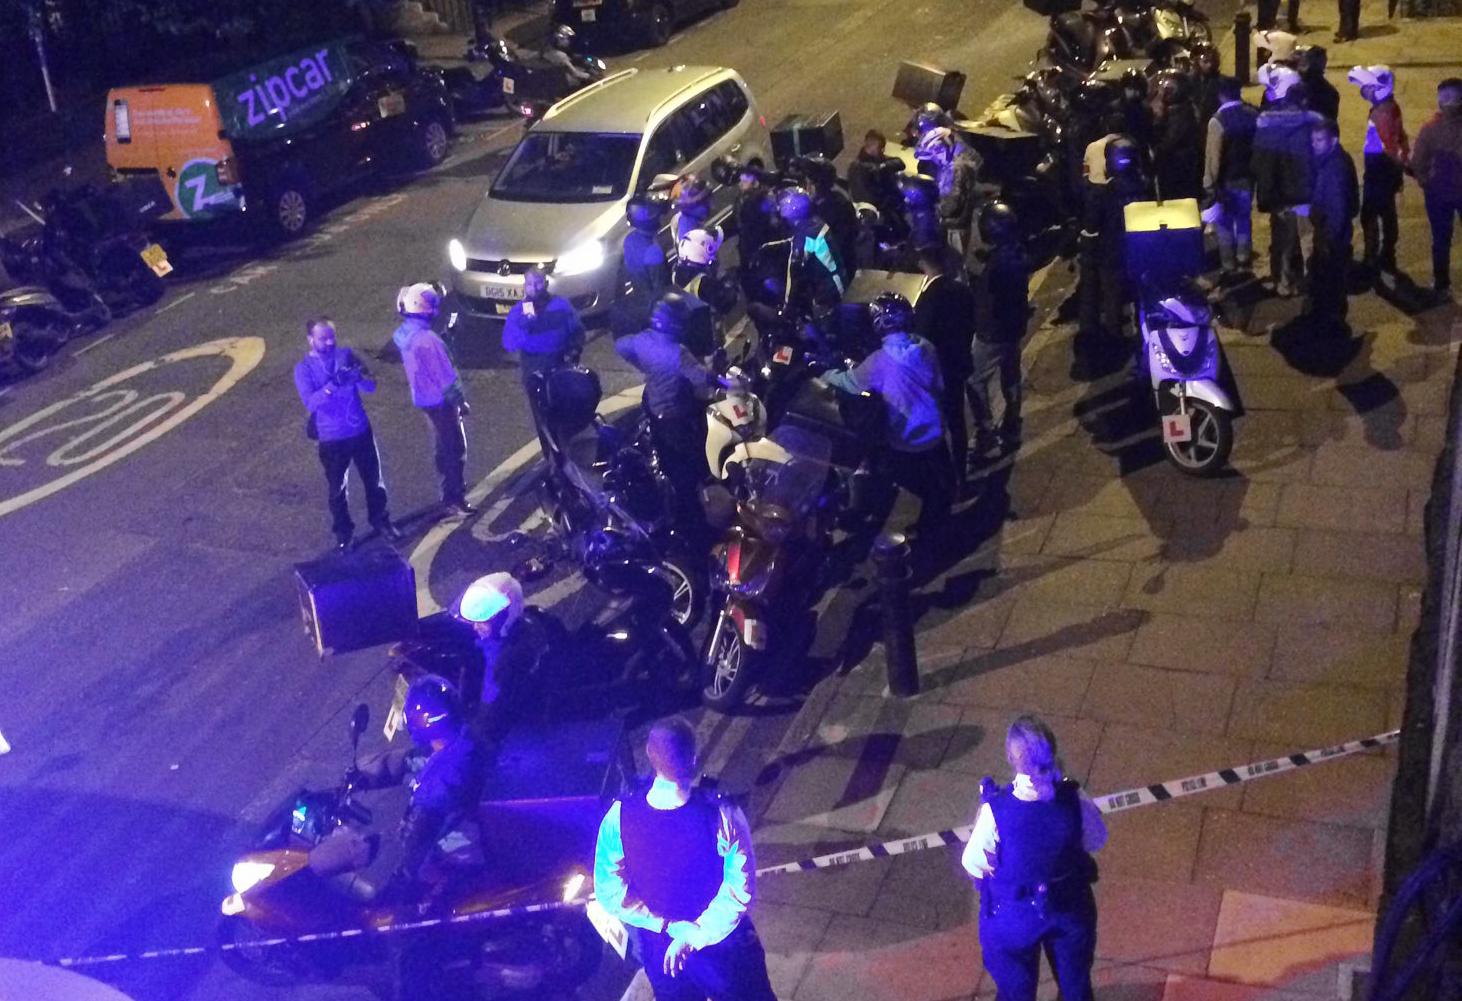 Londonpolisen på plats efter misstänkt syraattack i natt.